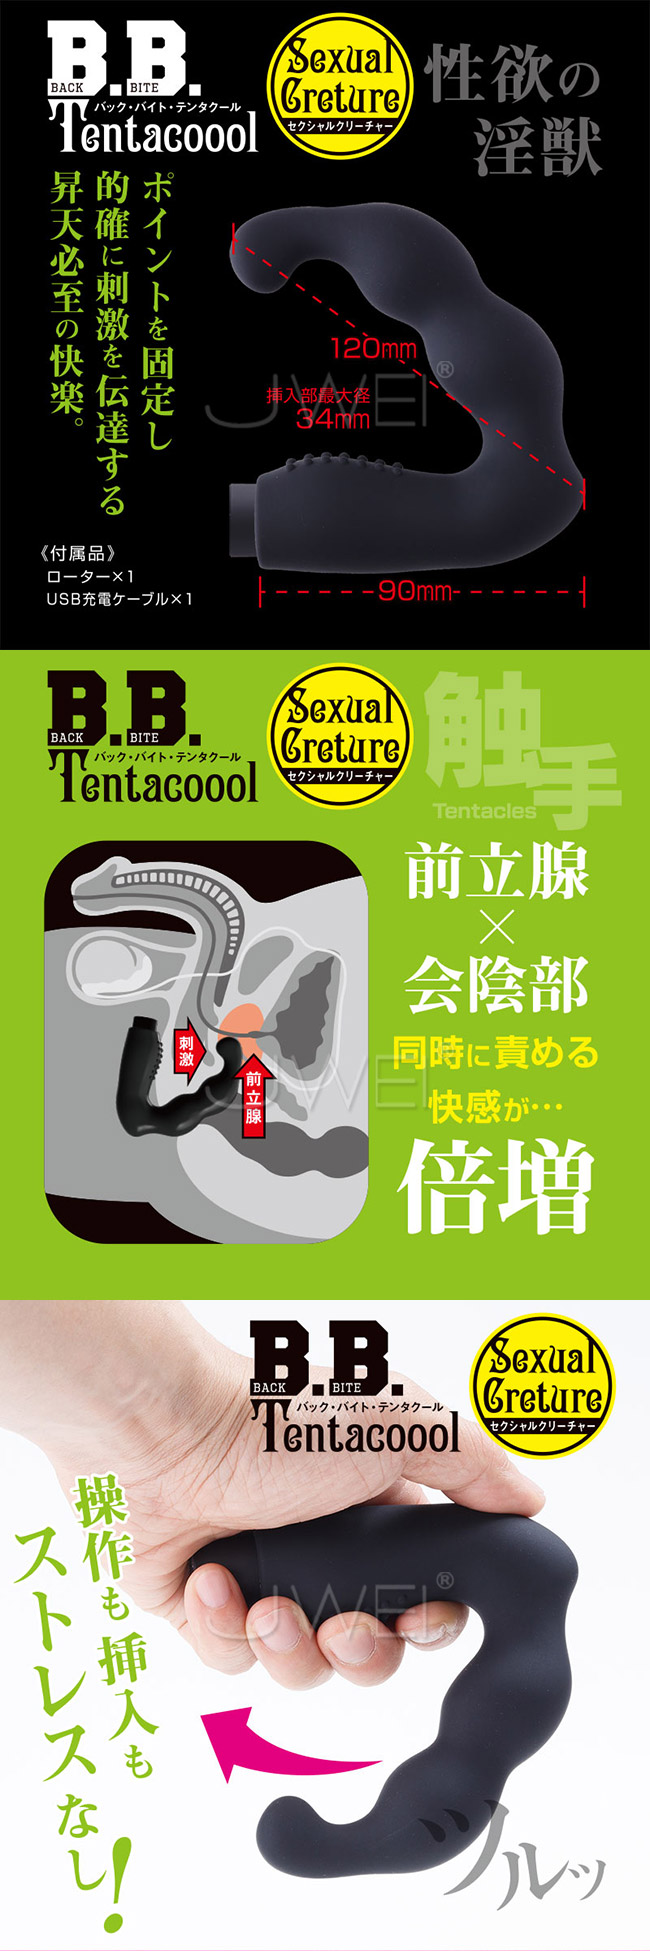 日本原裝進口NPG．B.B. Tentacool性欲淫獸 7段變頻U字型前列腺按摩器